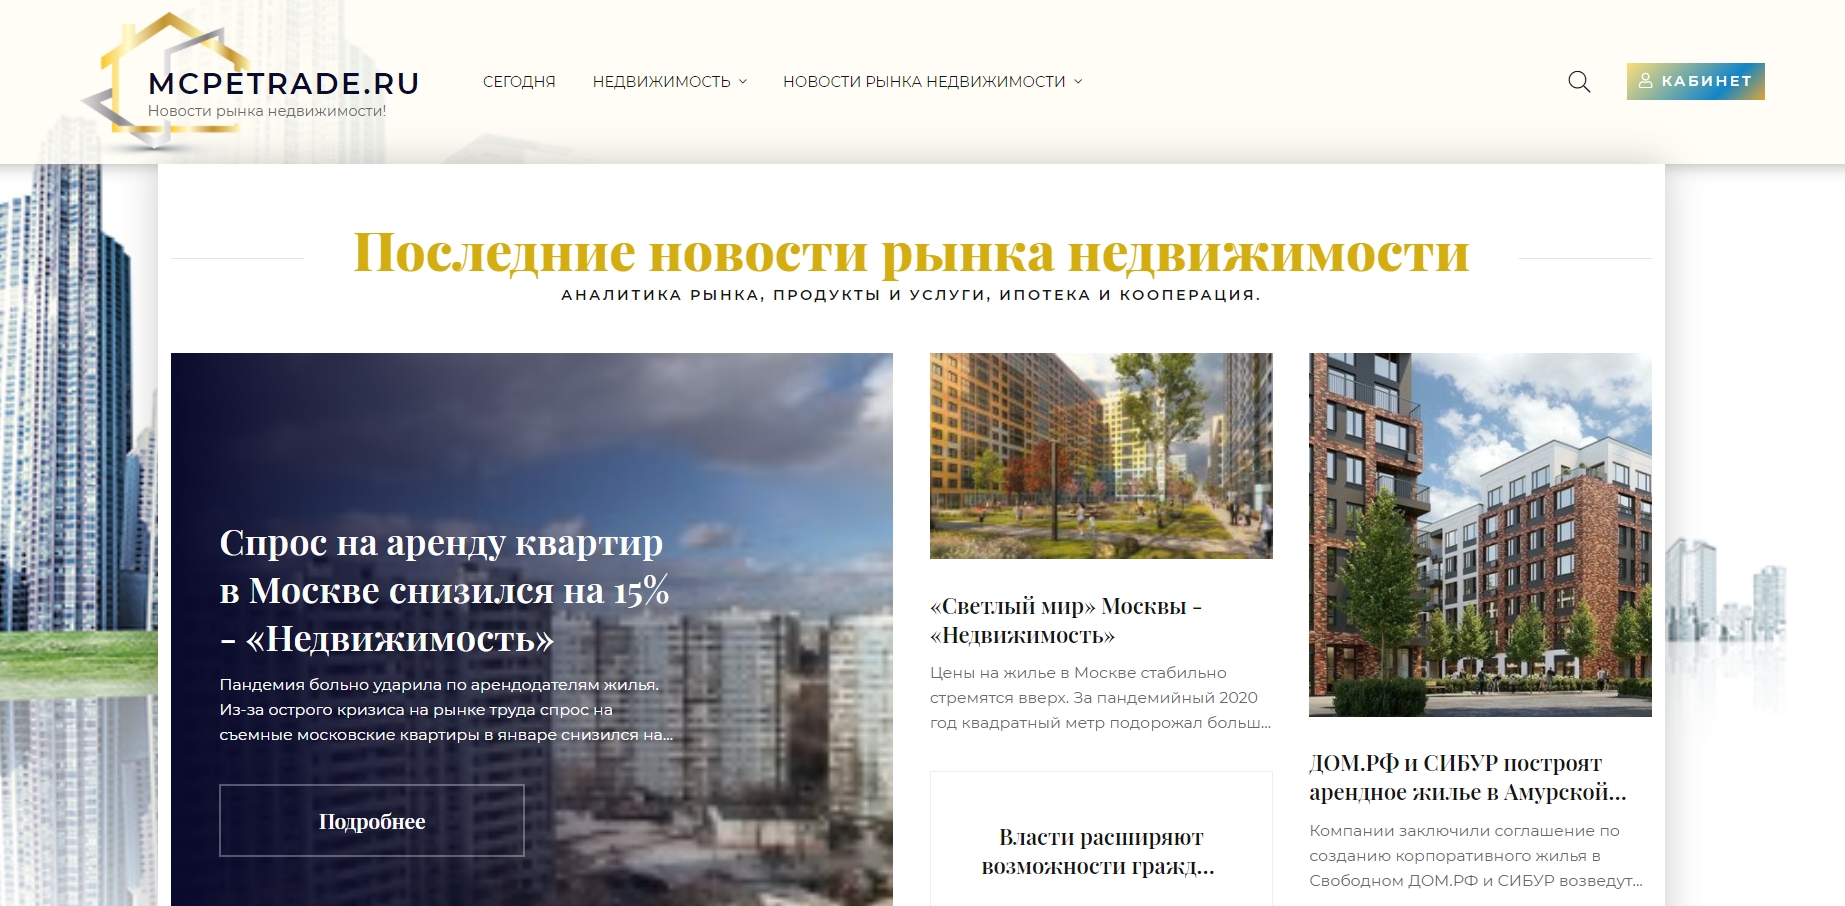 mcpetrade.ru - Ќовости рынка недвижимости